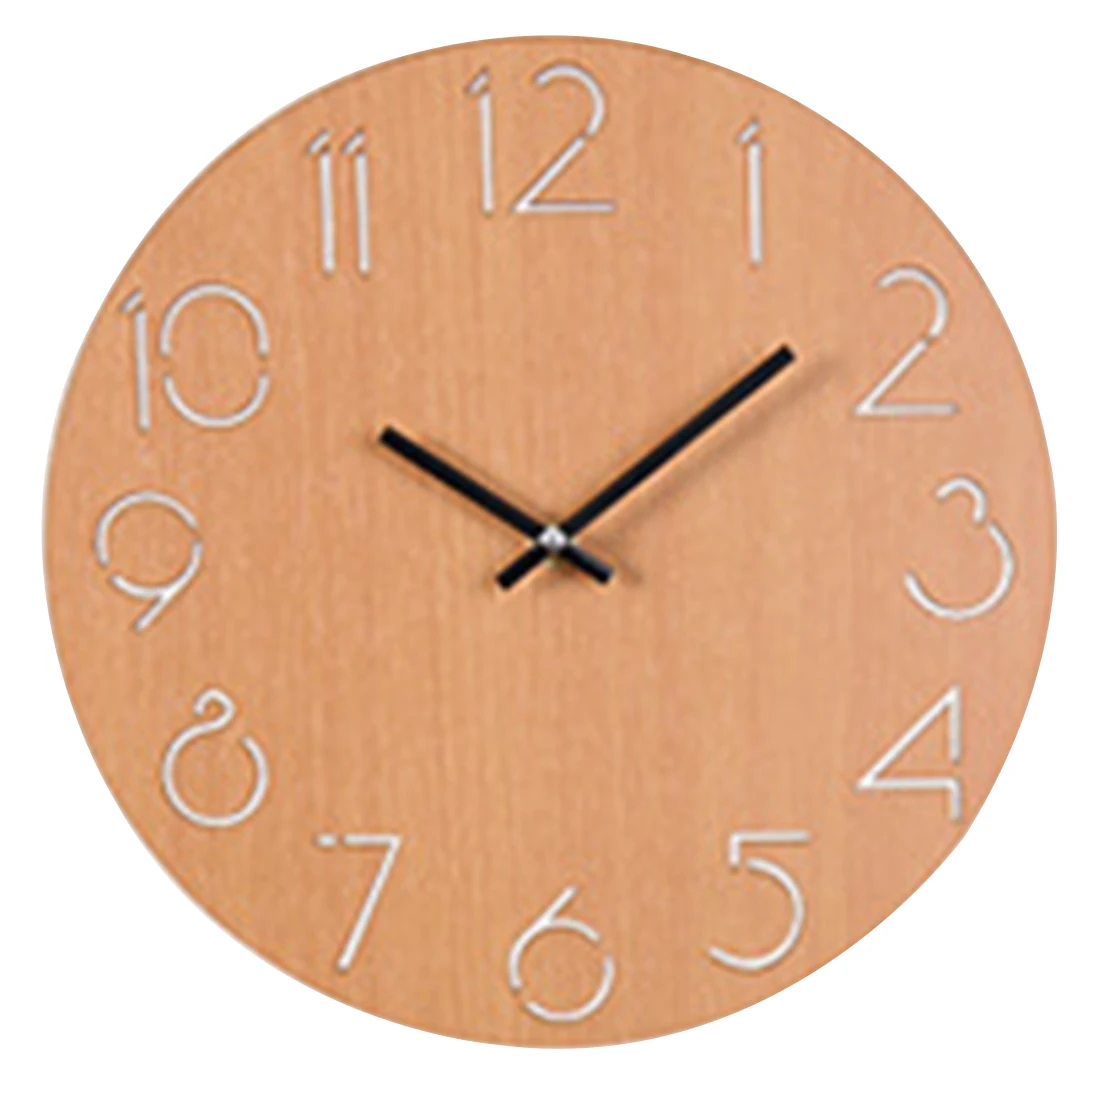 Homingdeco 30 см простые круглые Настенные часы кварцевые современный дизайн Кантри стиль красивые настенные часы для домашний декор гостиной - Цвет: Цвет: желтый